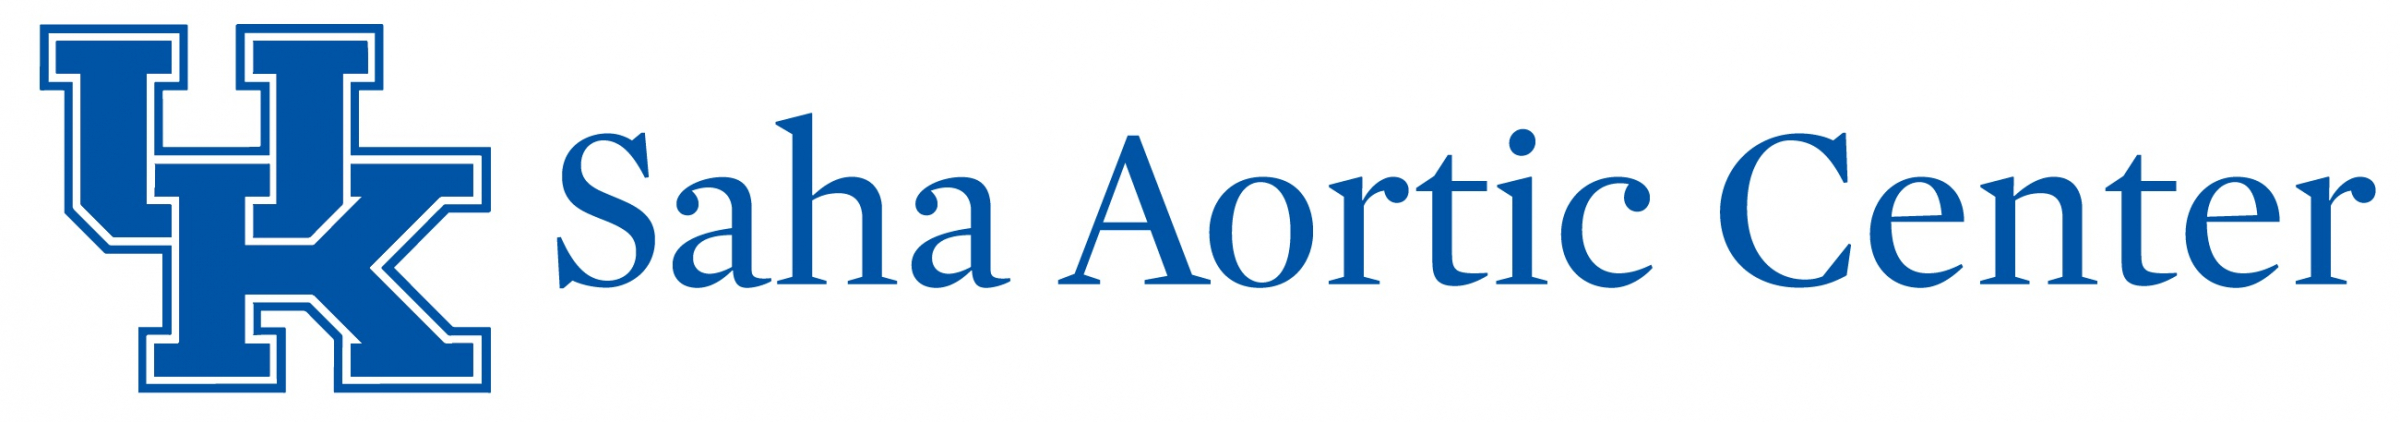 Saha Aortic Center logo